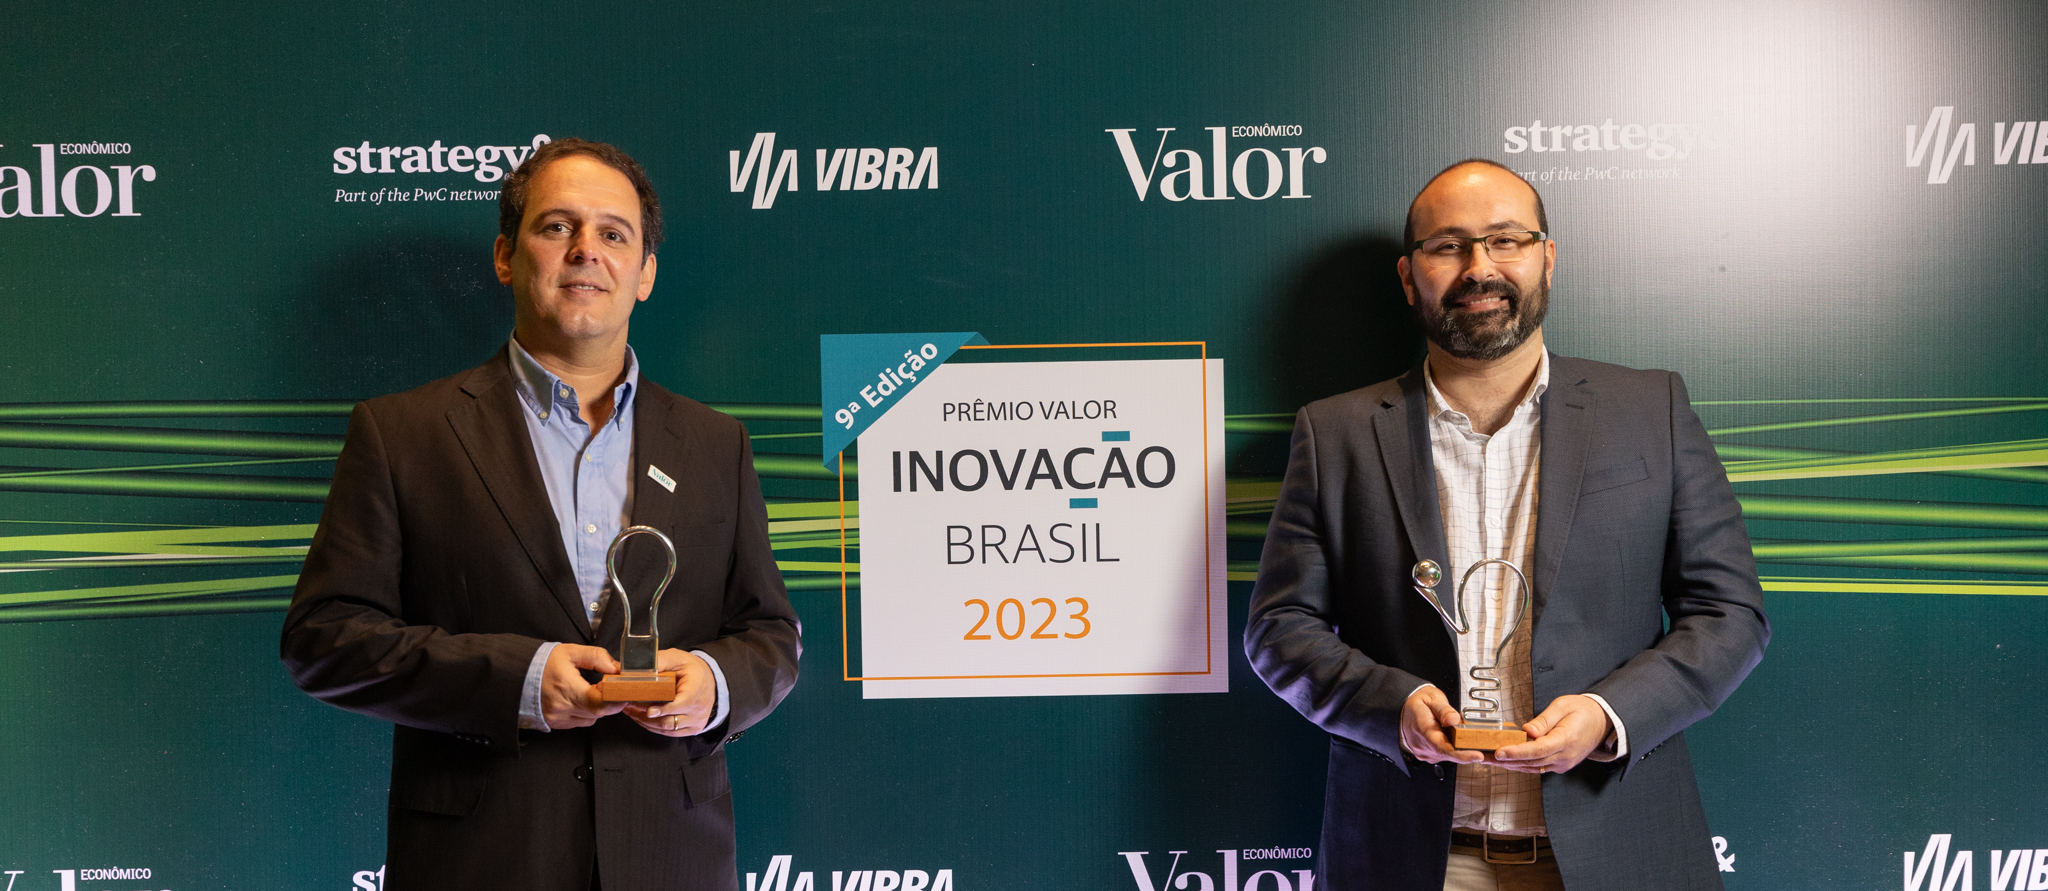 Dois homens usando roupas sociais seguram prêmios em frente a um painel onde está escrito: 9ª edição. Prêmio Valor Inovação Brasil 2023